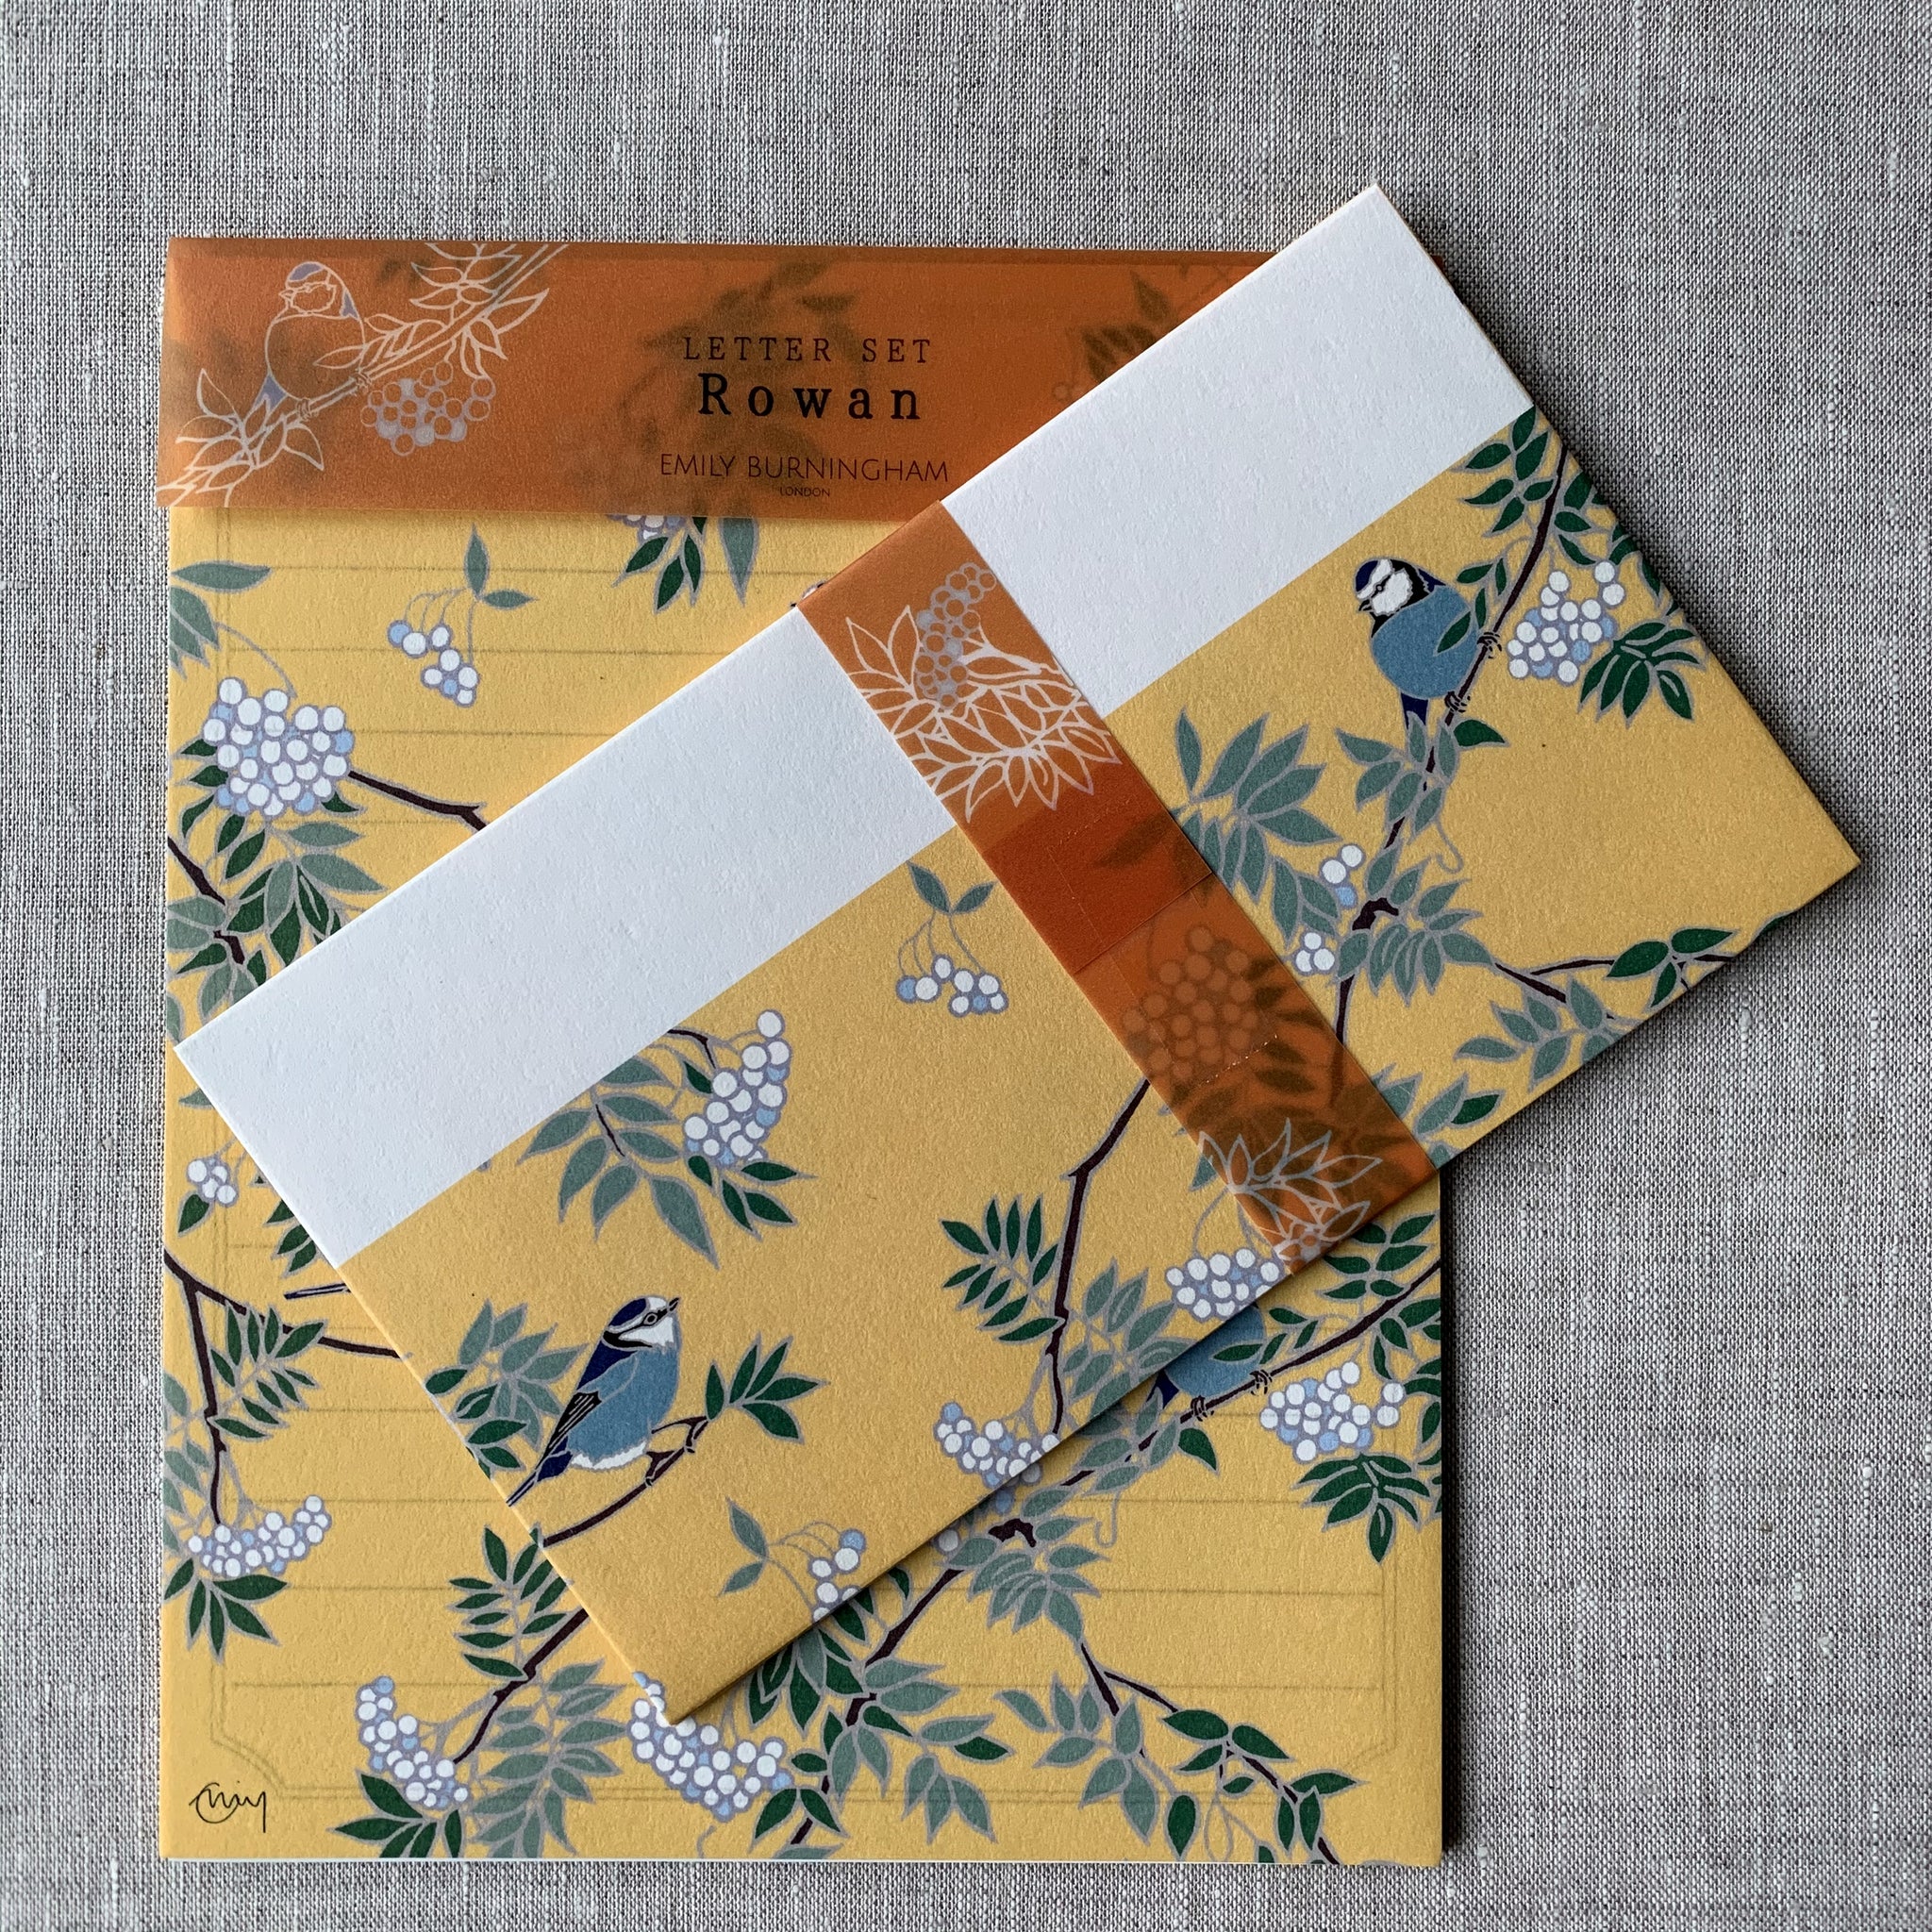 Rowan Tree with Blue Tits Writing Paper & Envelope Set - Emily Burningham - Japanese Stationery